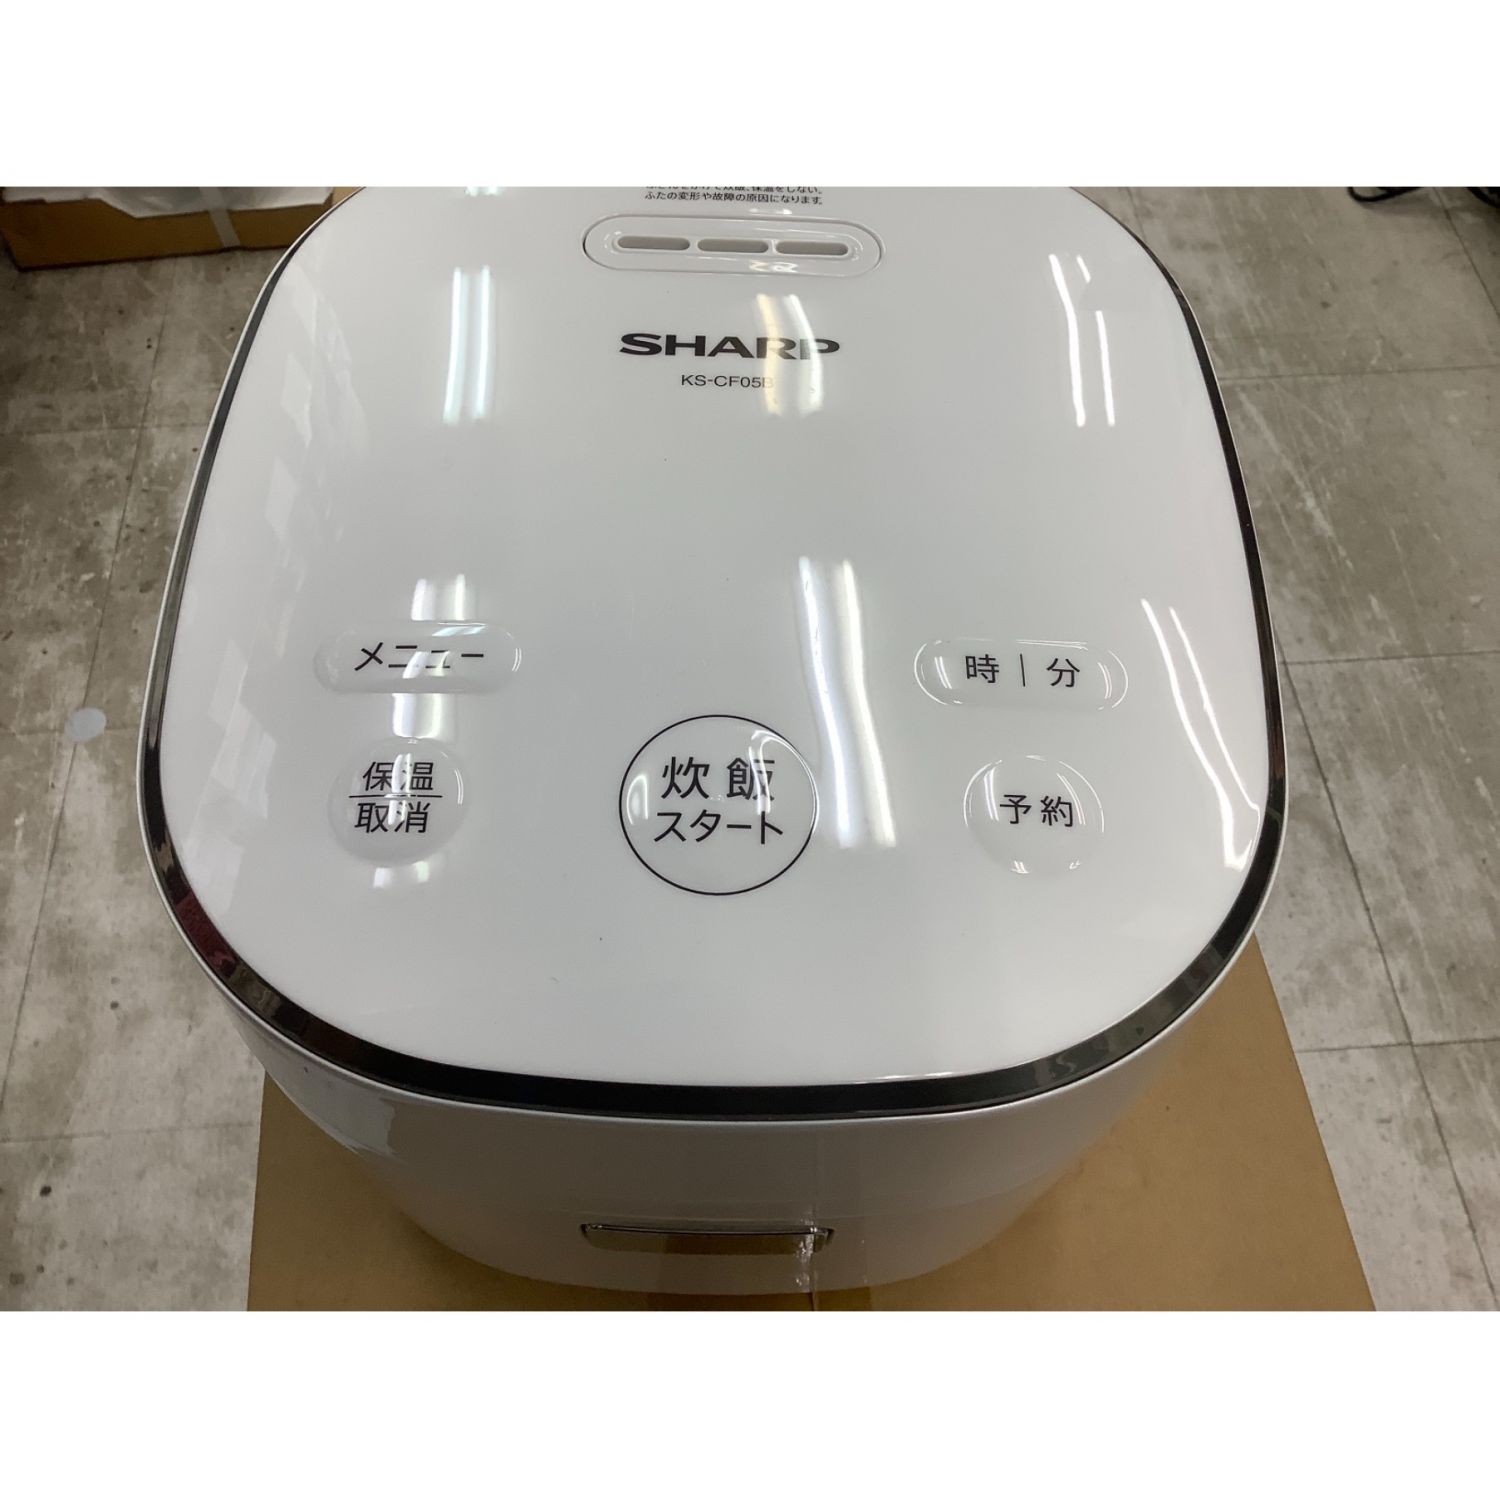 SHARP (シャープ) 炊飯器 KS-CF05B-W 2019年製 0.54L｜トレファクONLINE